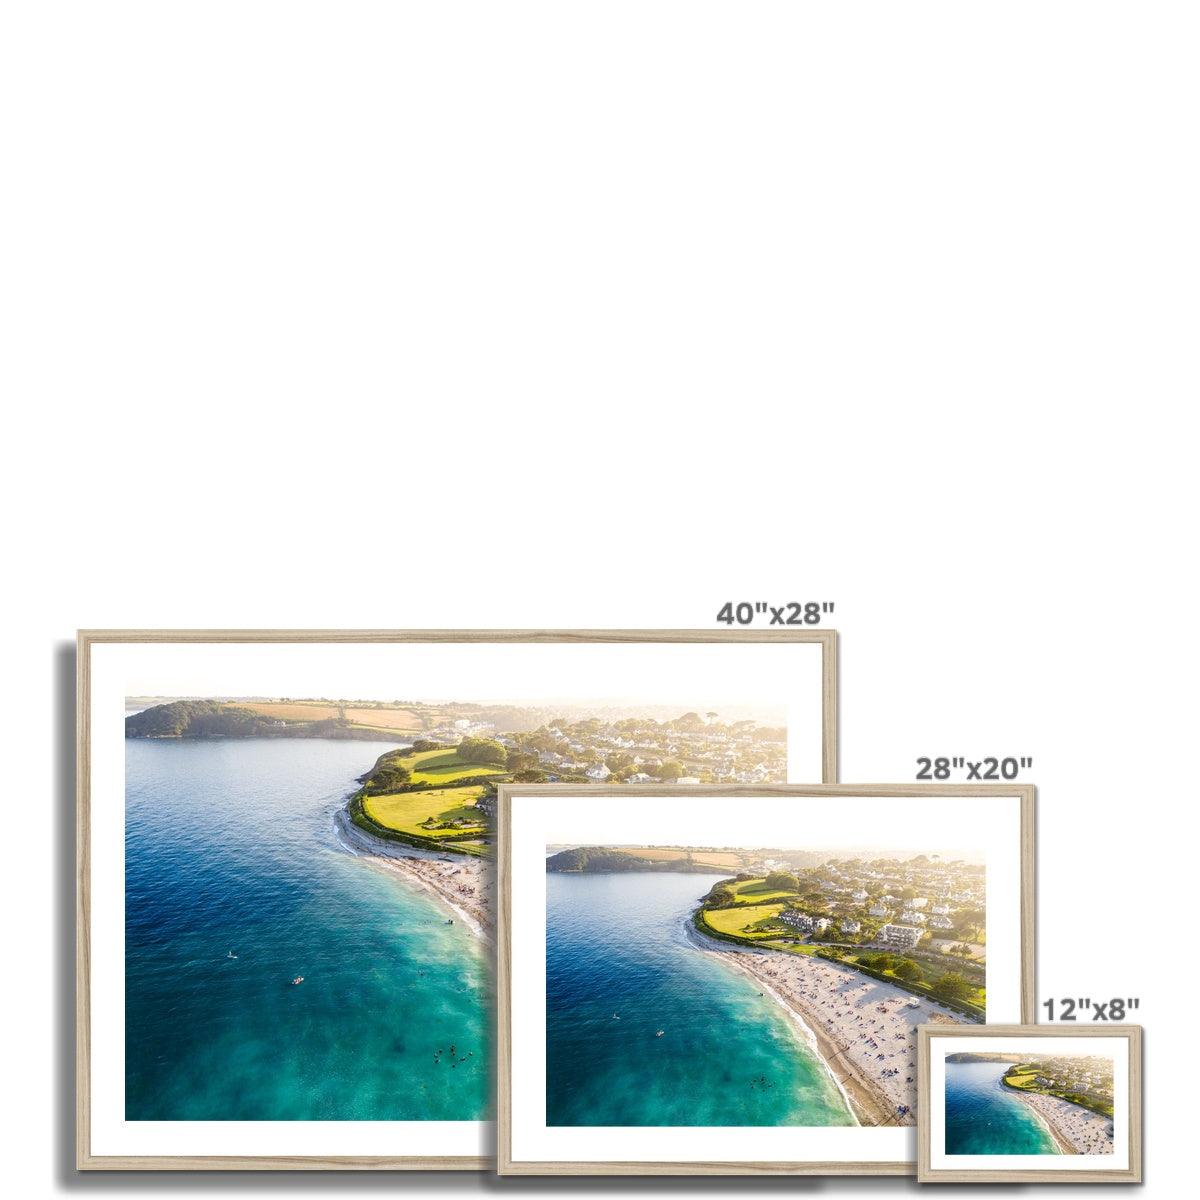 gyllyngvase view frame sizes